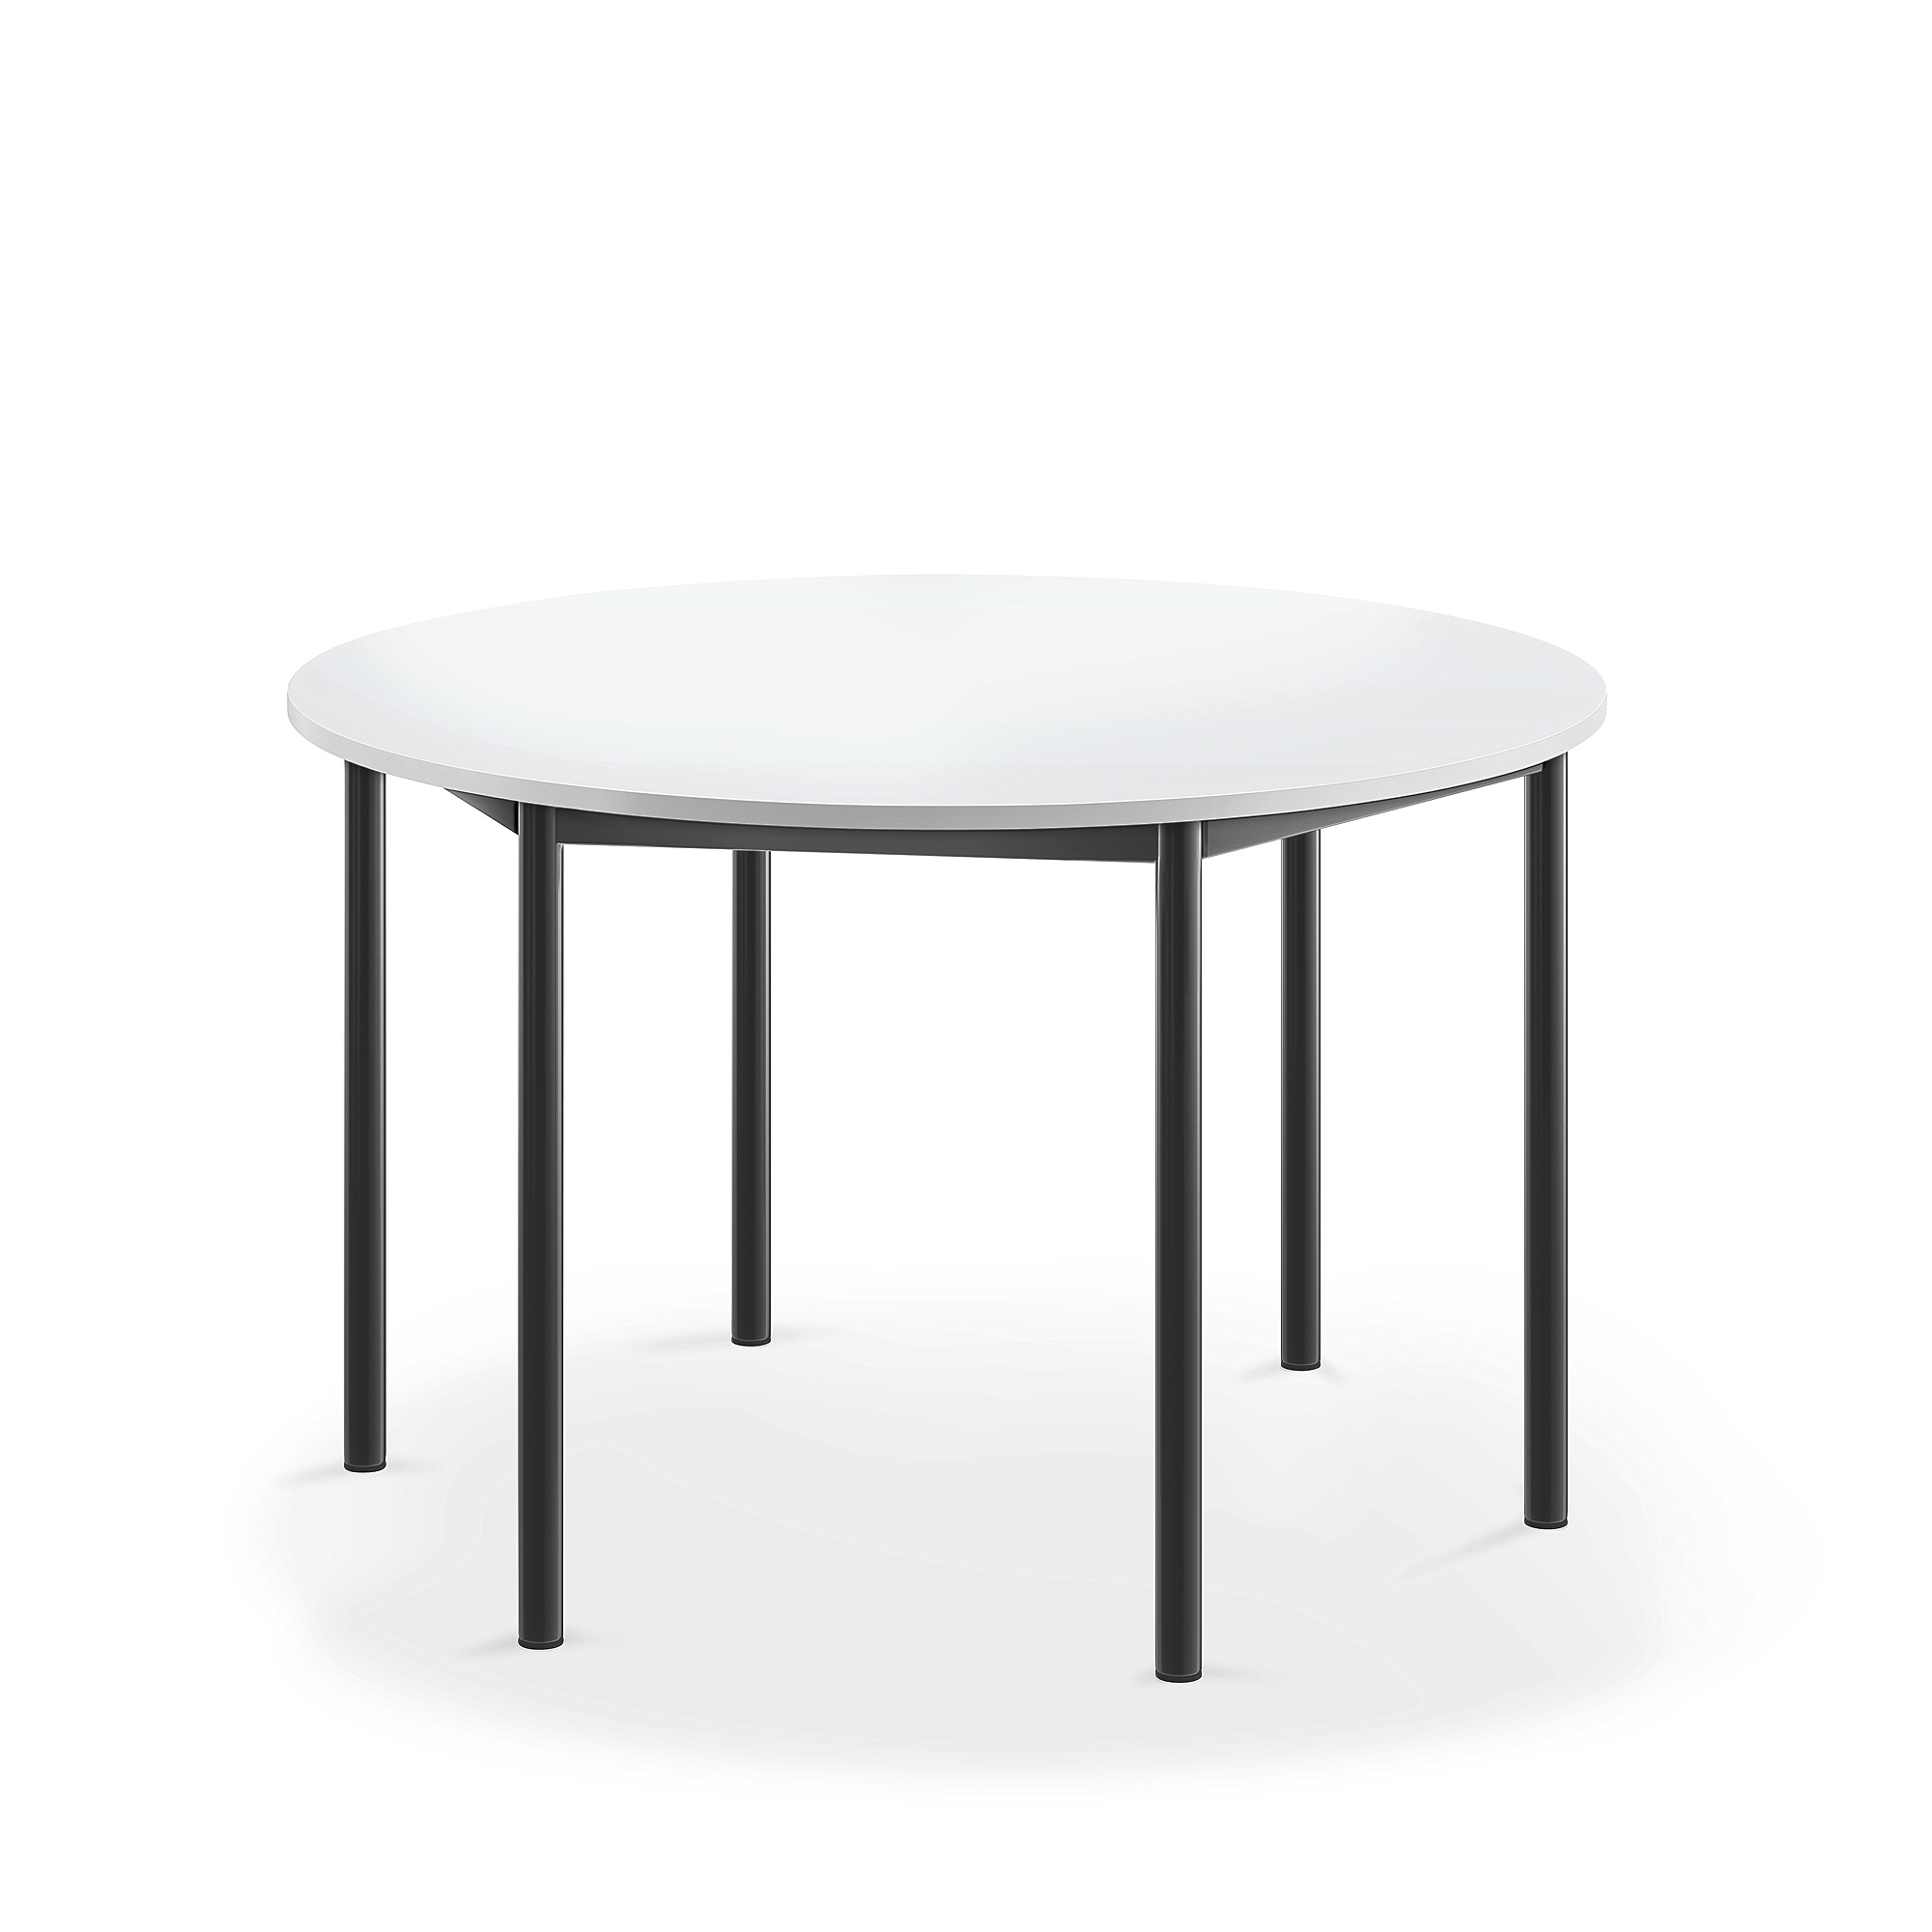 Stůl BORÅS, Ø1200x720 mm, antracitově šedé nohy, HPL deska, bílá